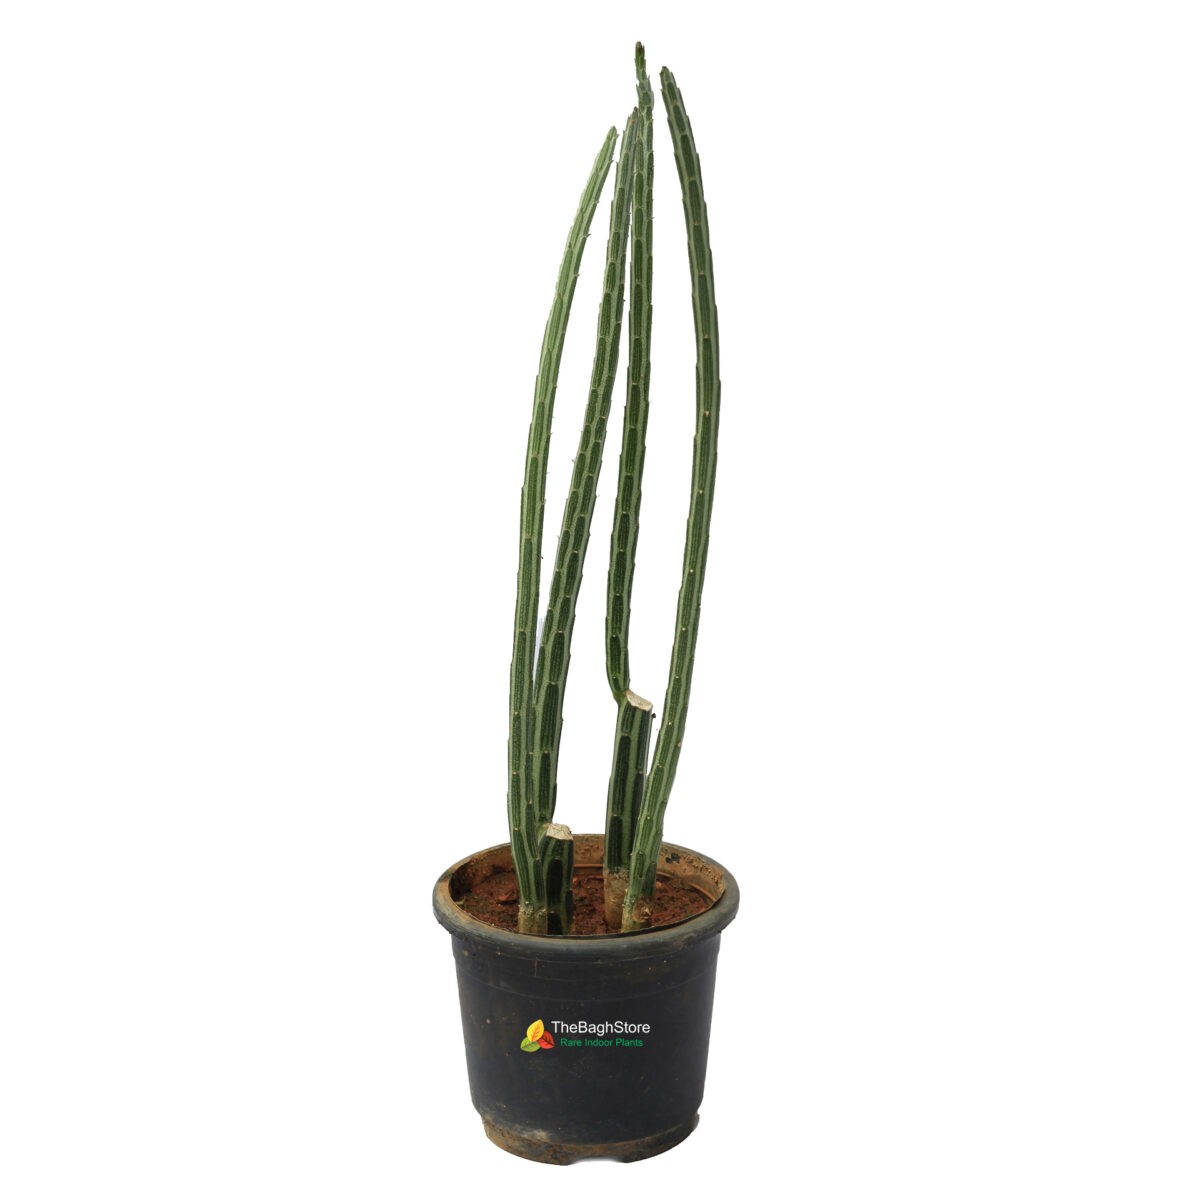 Pickle Plant - A rare succulent plant